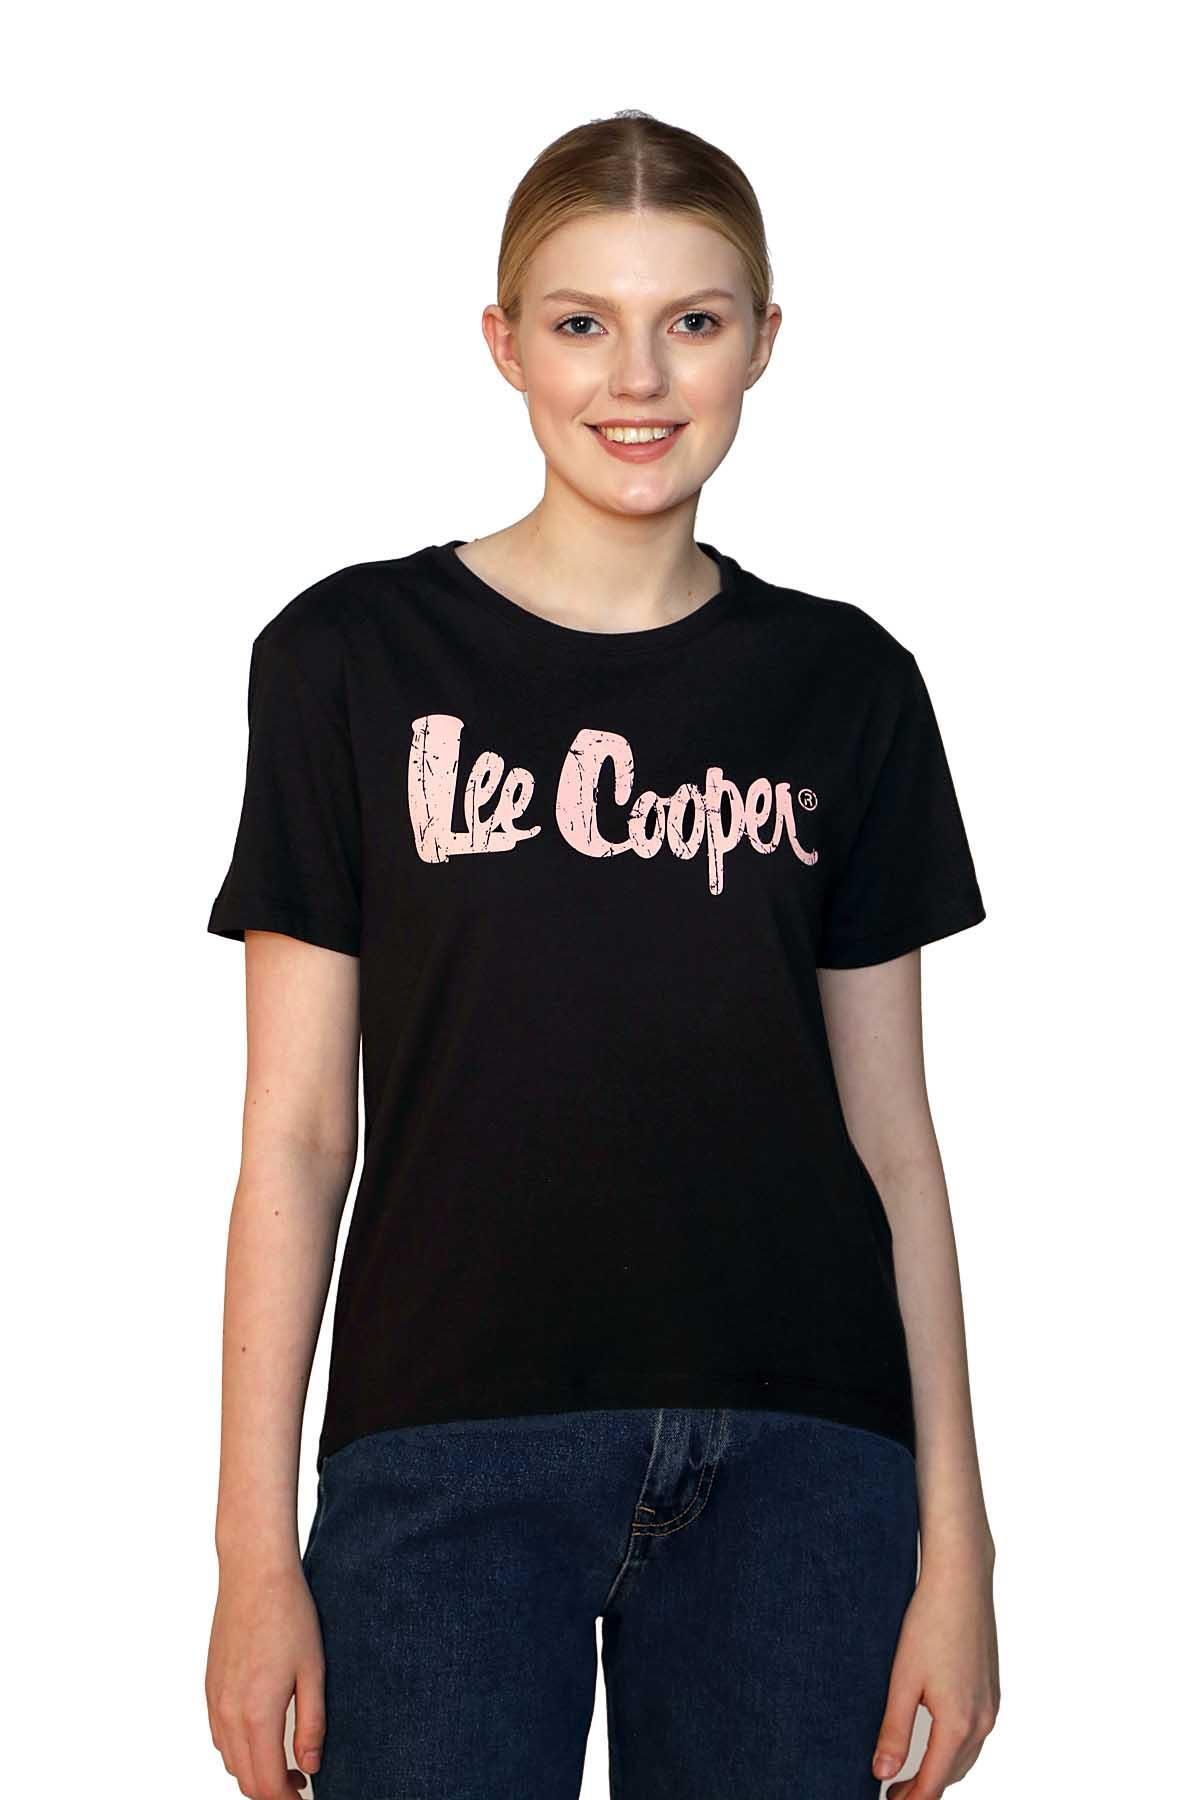 Lee Cooper Londonlogo Kadın O Yaka T-Shirt Siyah